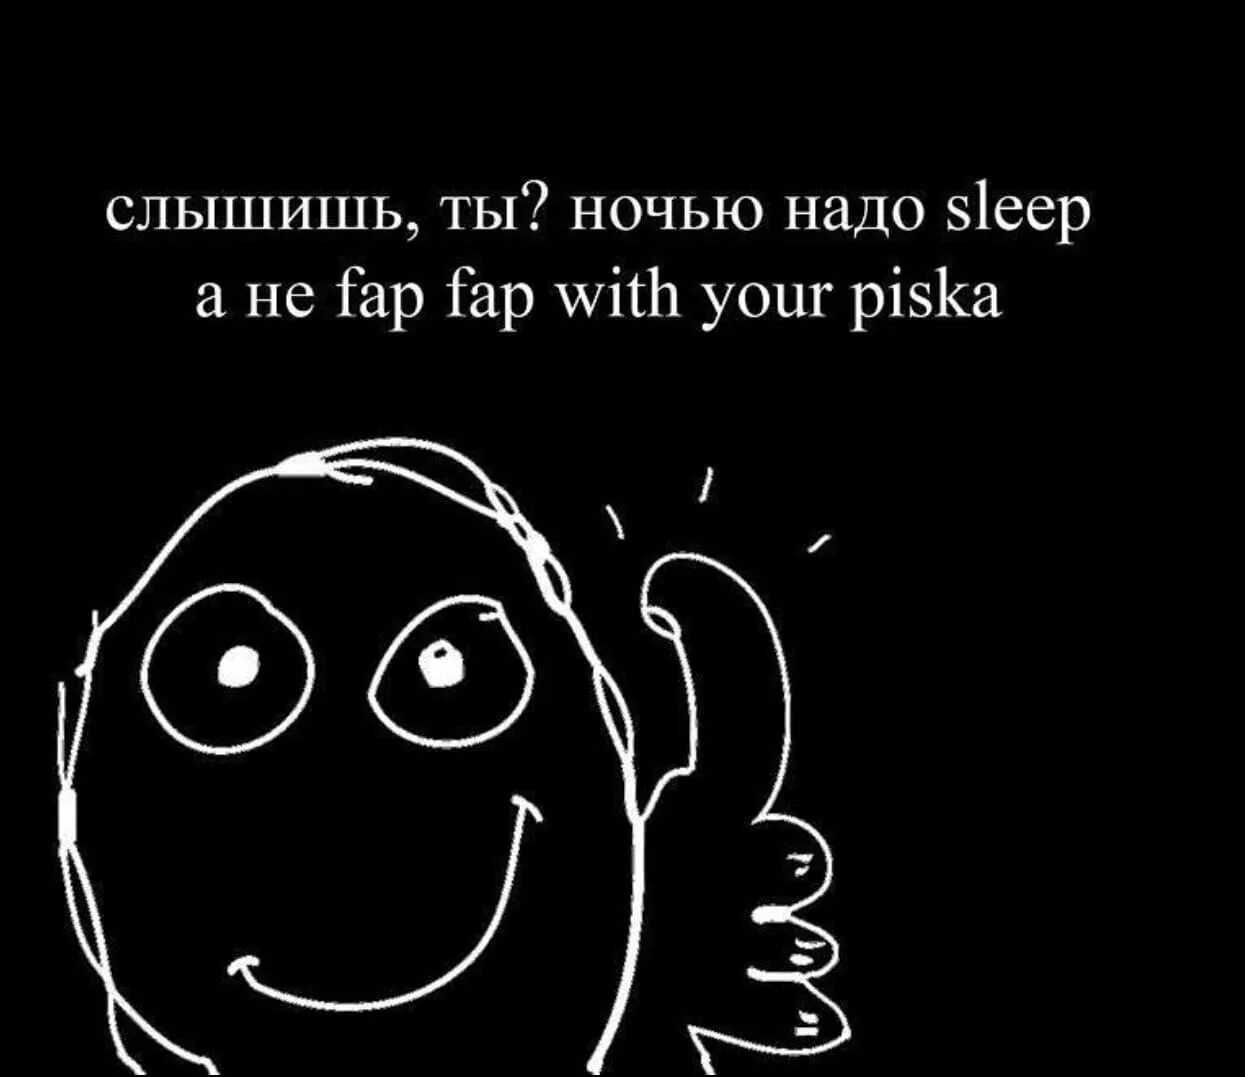 Fap is. Ночью надо Sleep. Ночью надо спать а не Fap Fap. Ночью надо спать а не ФАП ФАП.